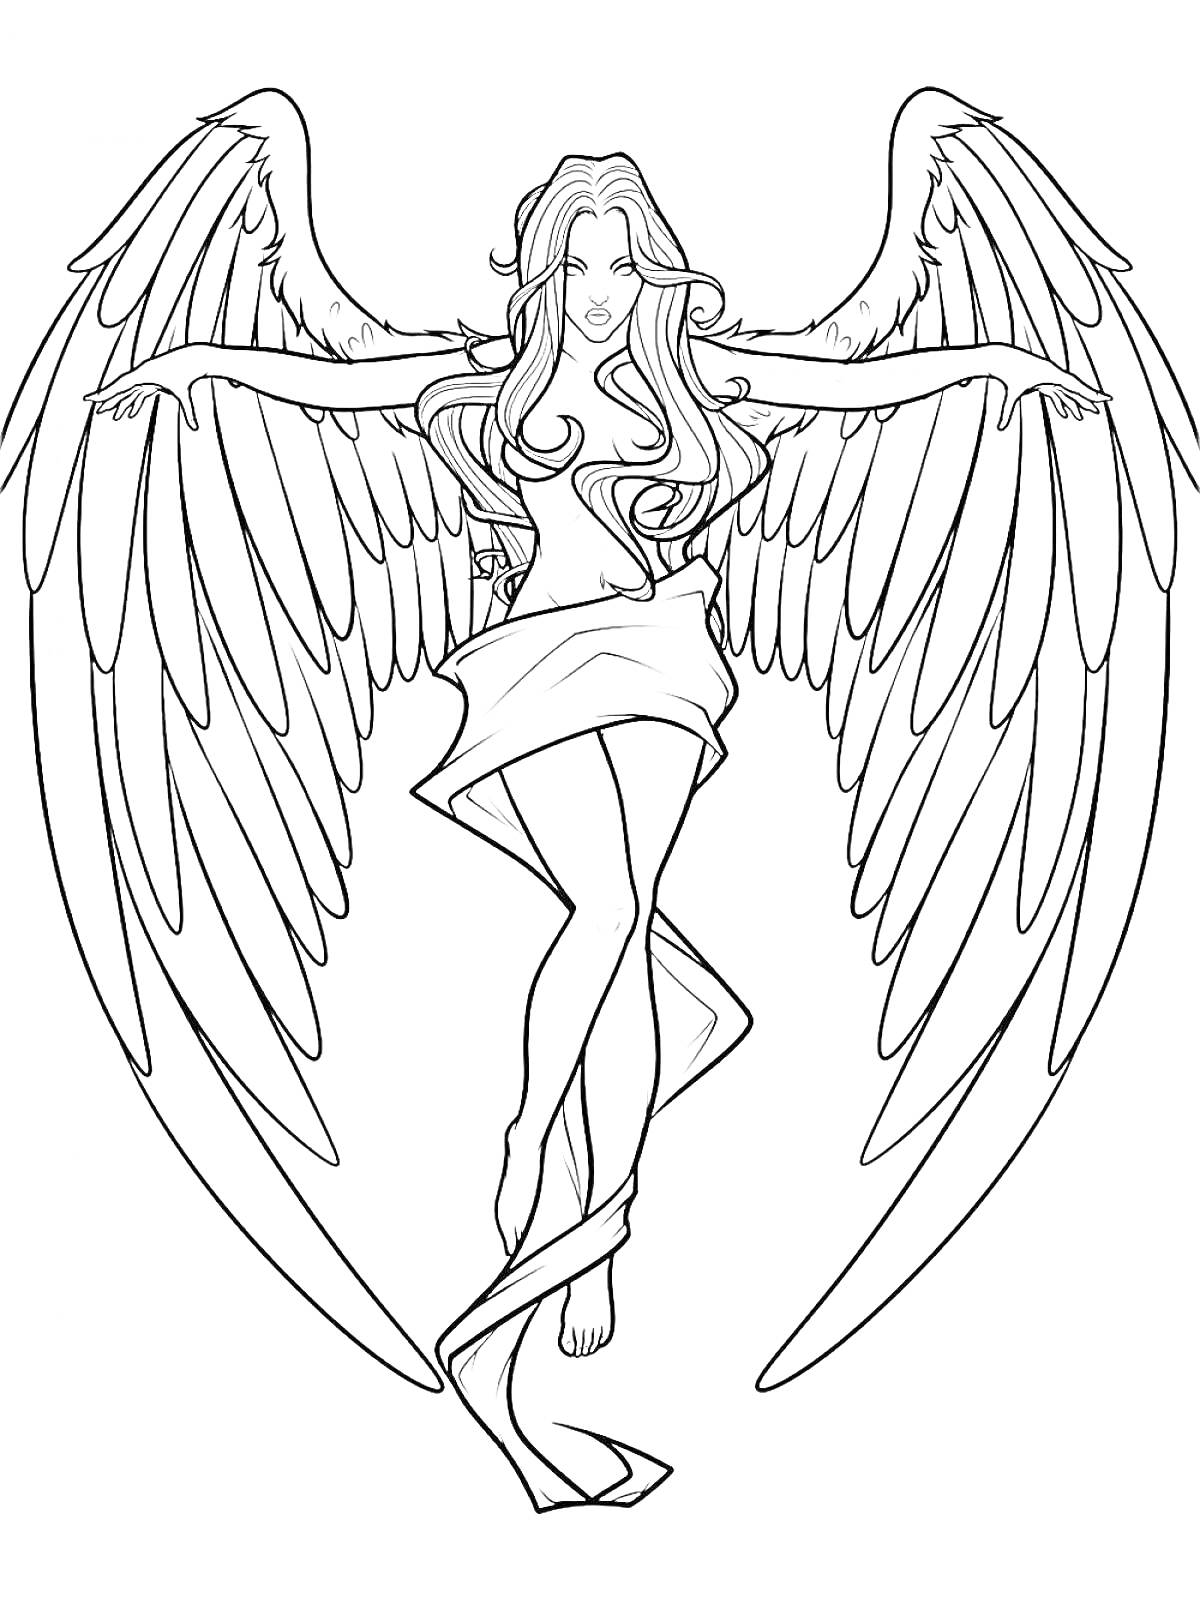 Раскраска Ангел с расправленными крыльями в развевающейся одежде